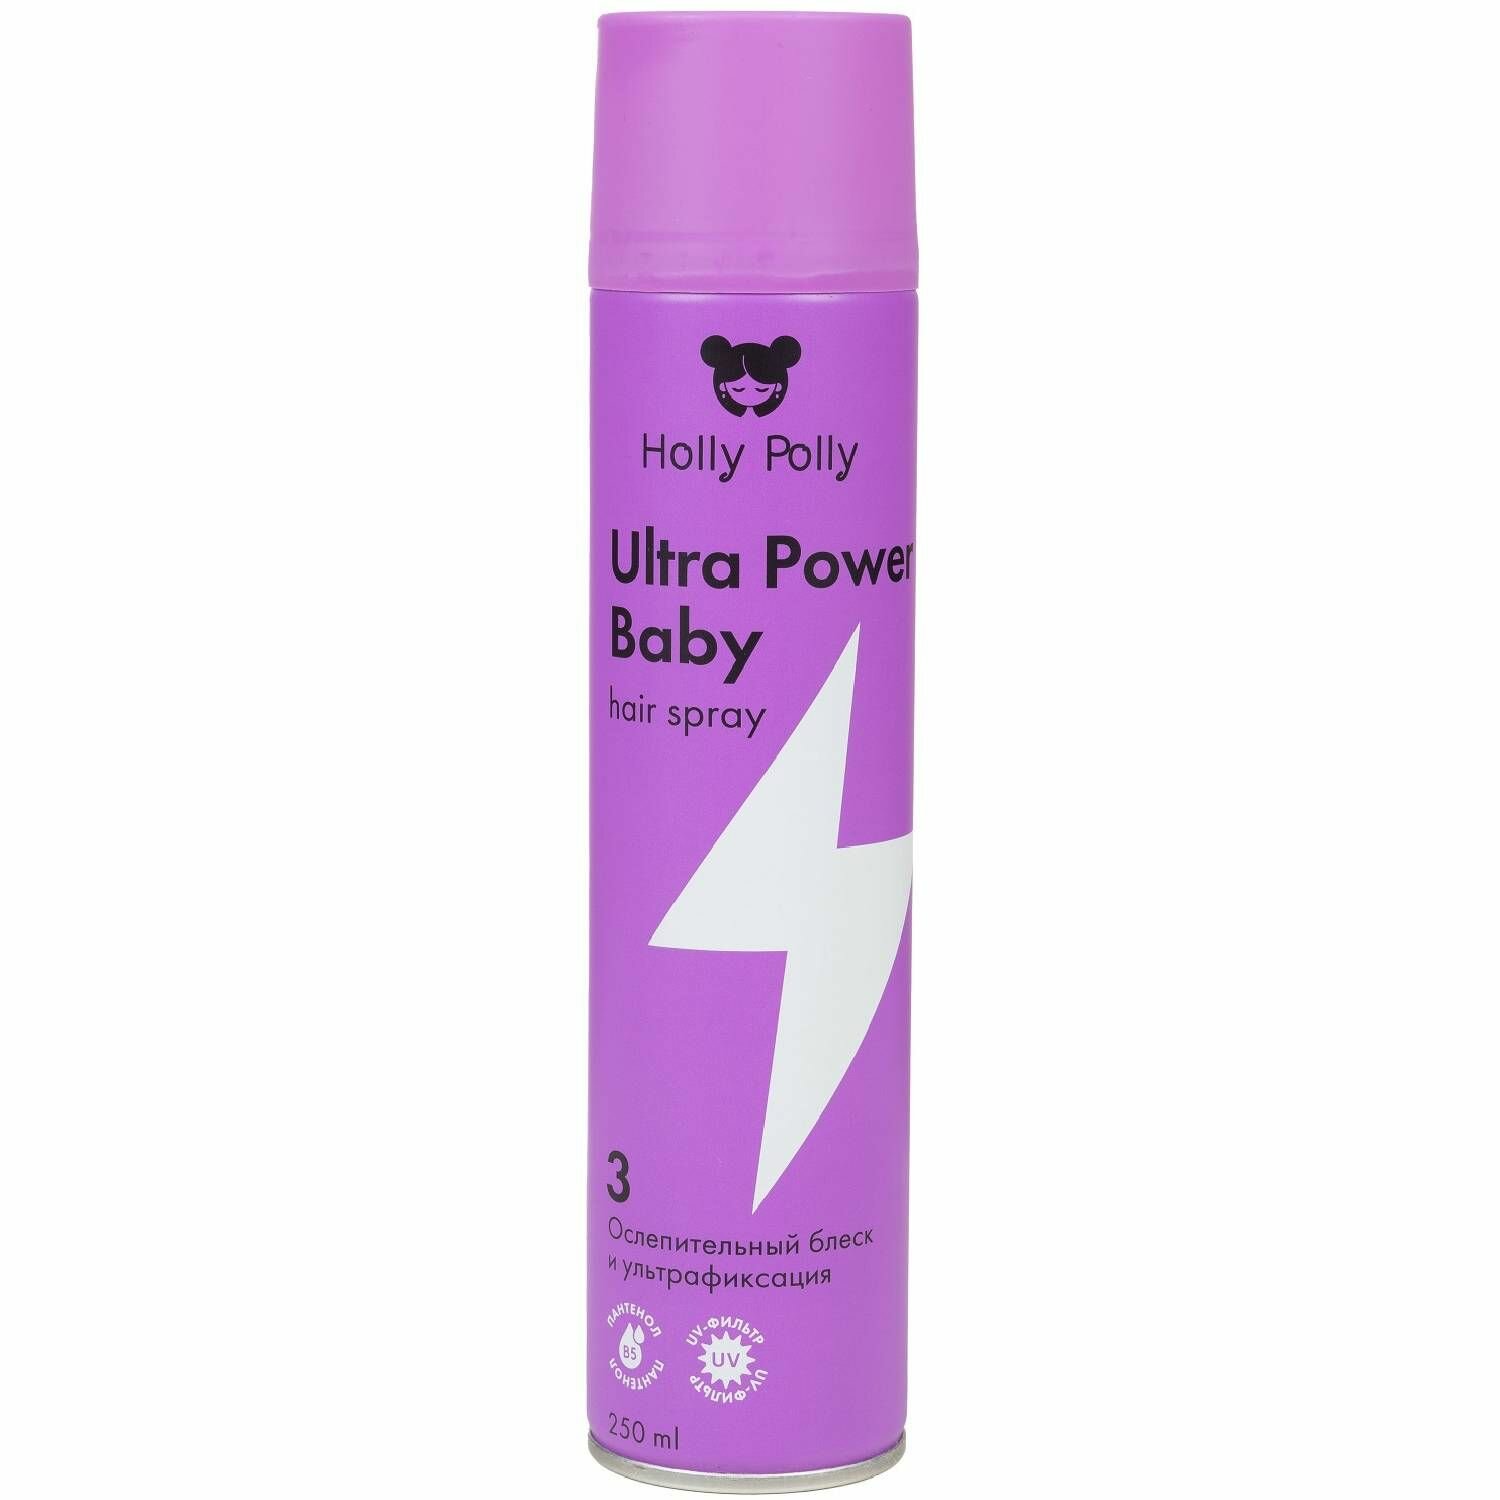 Лак для волос Holly Polly Ultra Power Baby Ослепительный блеск и ультрафиксация, 250 мл